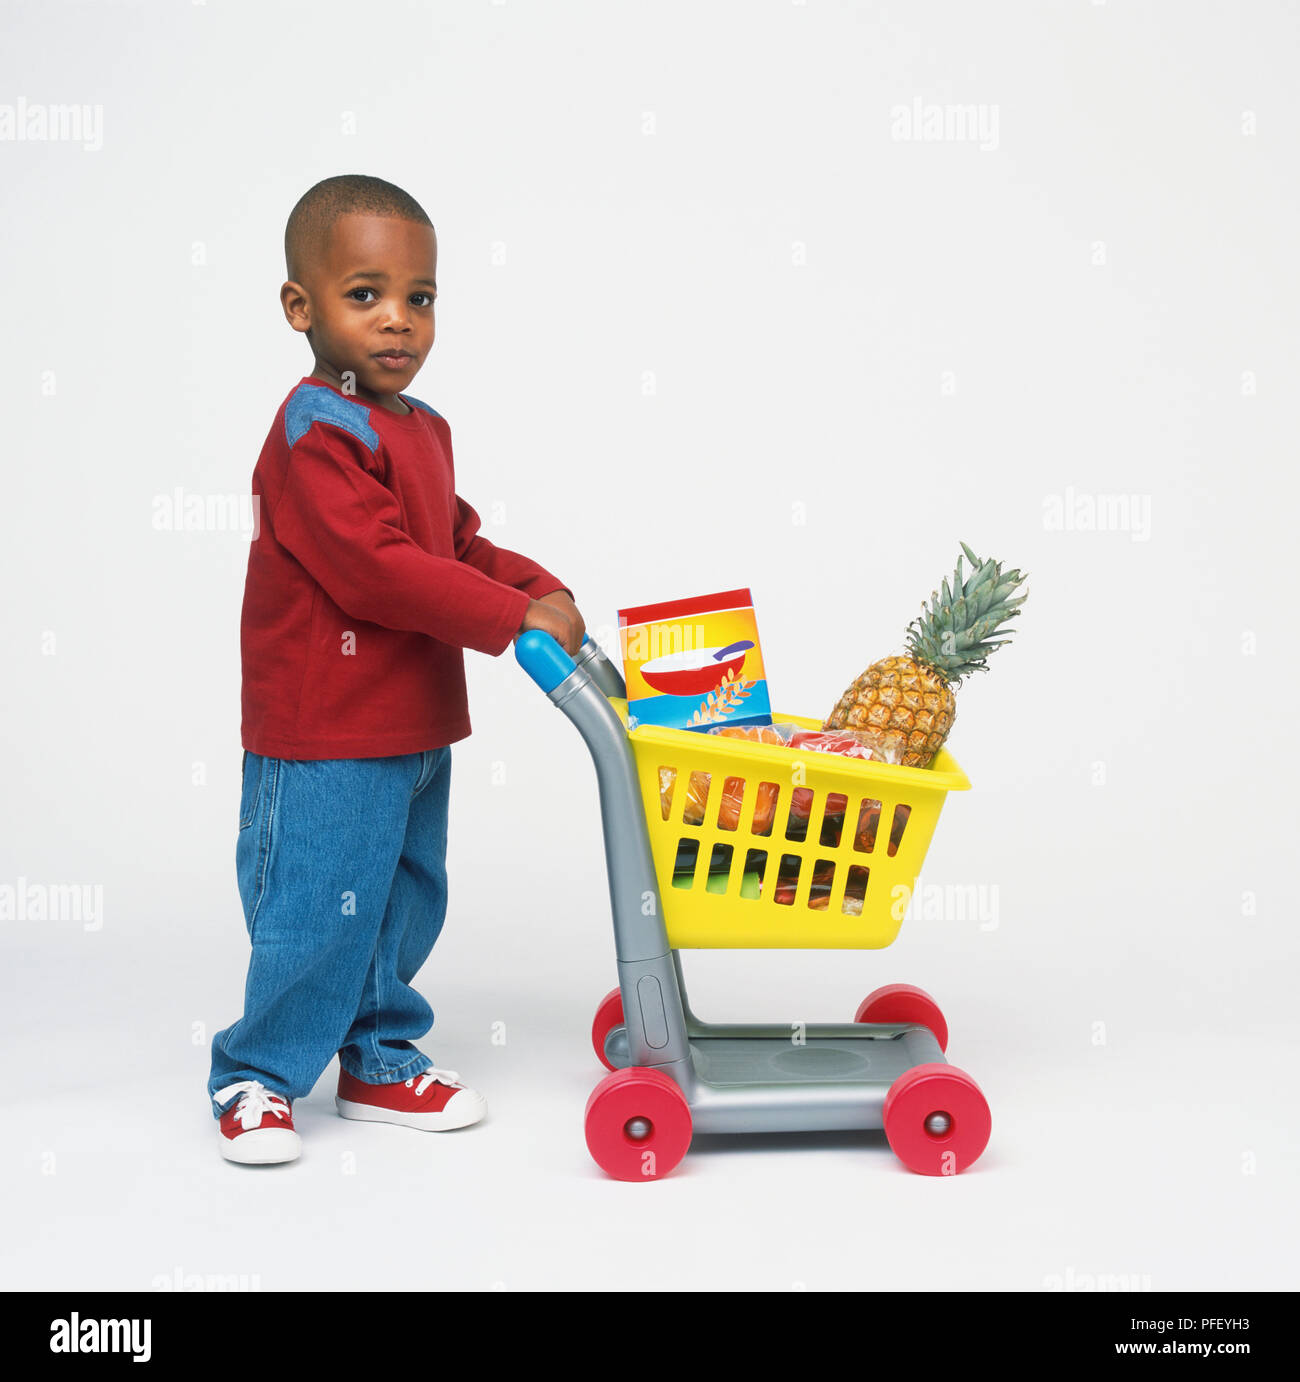 baby pushing shopping cart